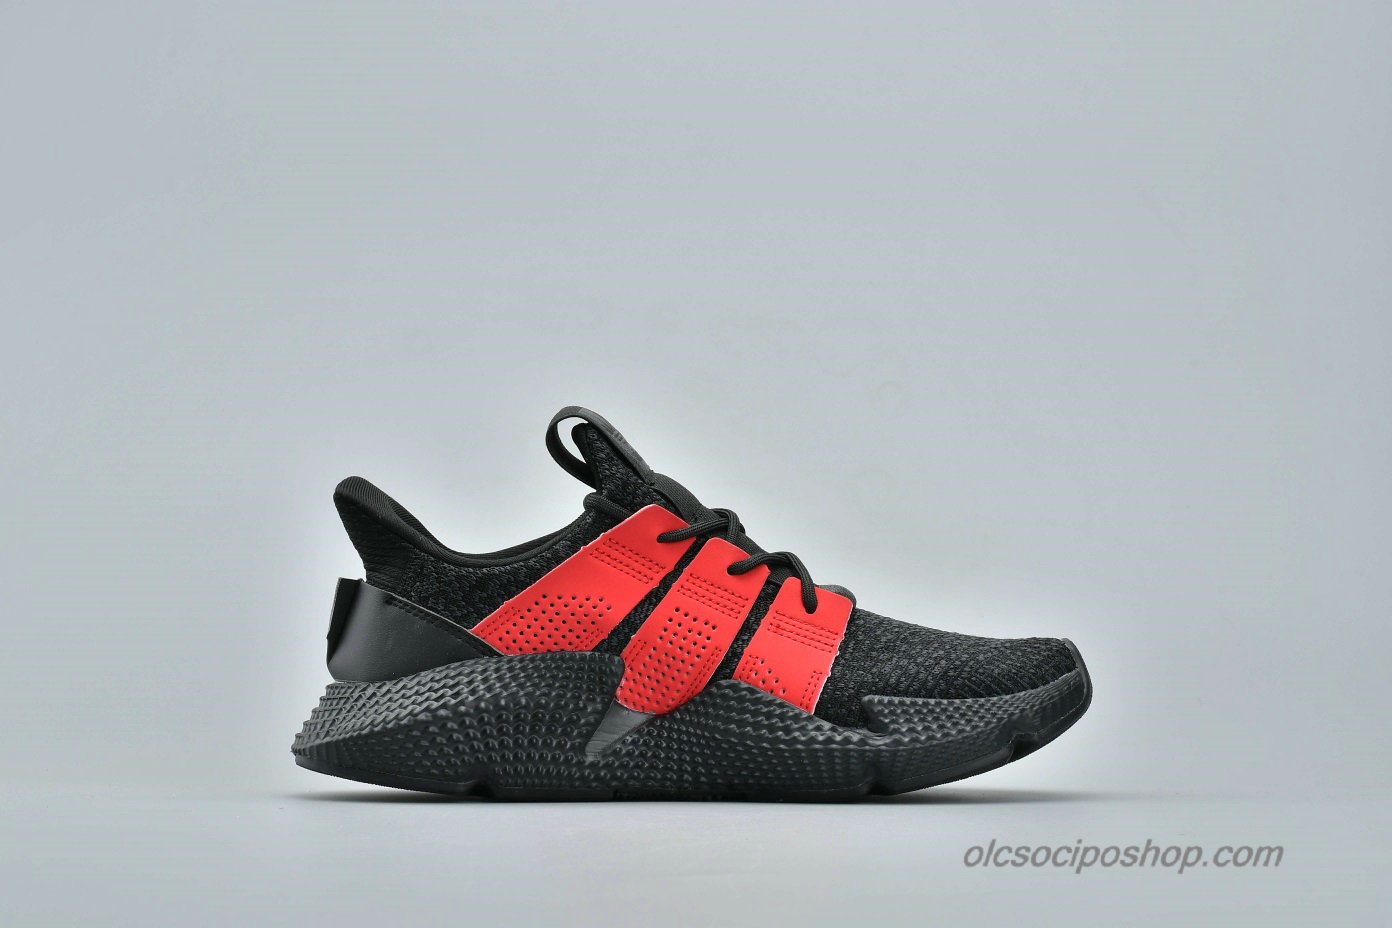 Adidas Prophere Undftd Fekete/Piros Cipők (BB6994) - Kattintásra bezárul